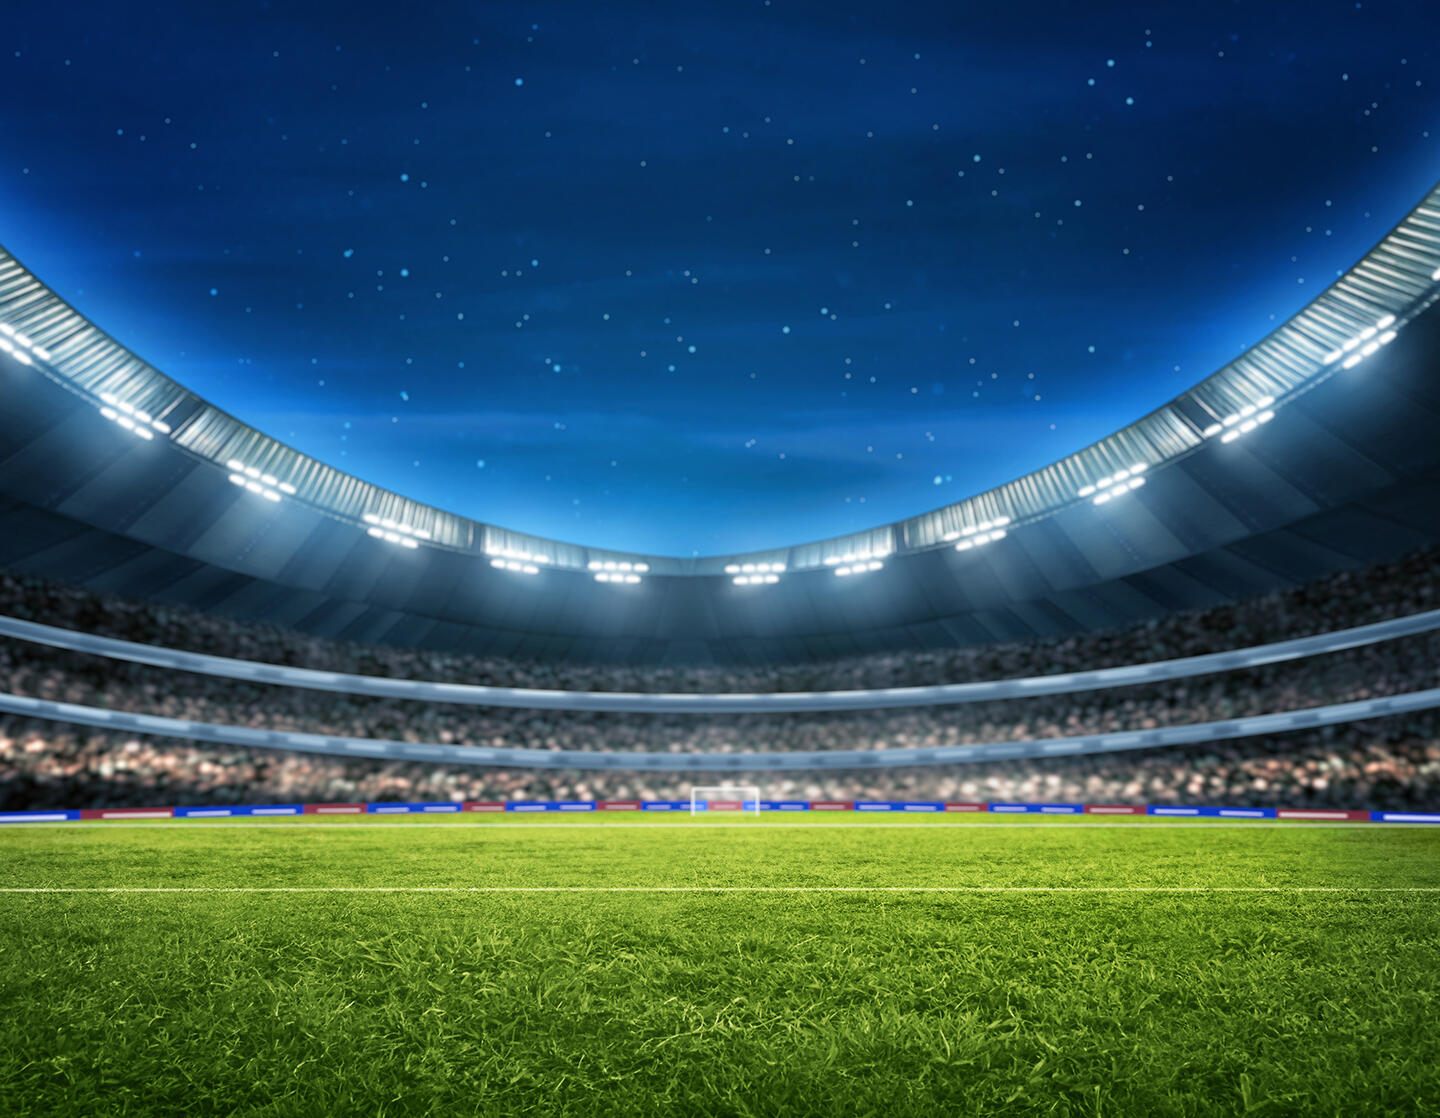 Stade de Bordeaux nachts unter einem Sternenhimmel beleuchtet, mit einem makellosen Rasen, der die Atmosphäre eines Abendspiels suggeriert, in der Nähe des Aparthotels Bordeaux, praktisch für Besucher, die eine Unterkunft in der Nähe des Sportereignisses suchen.